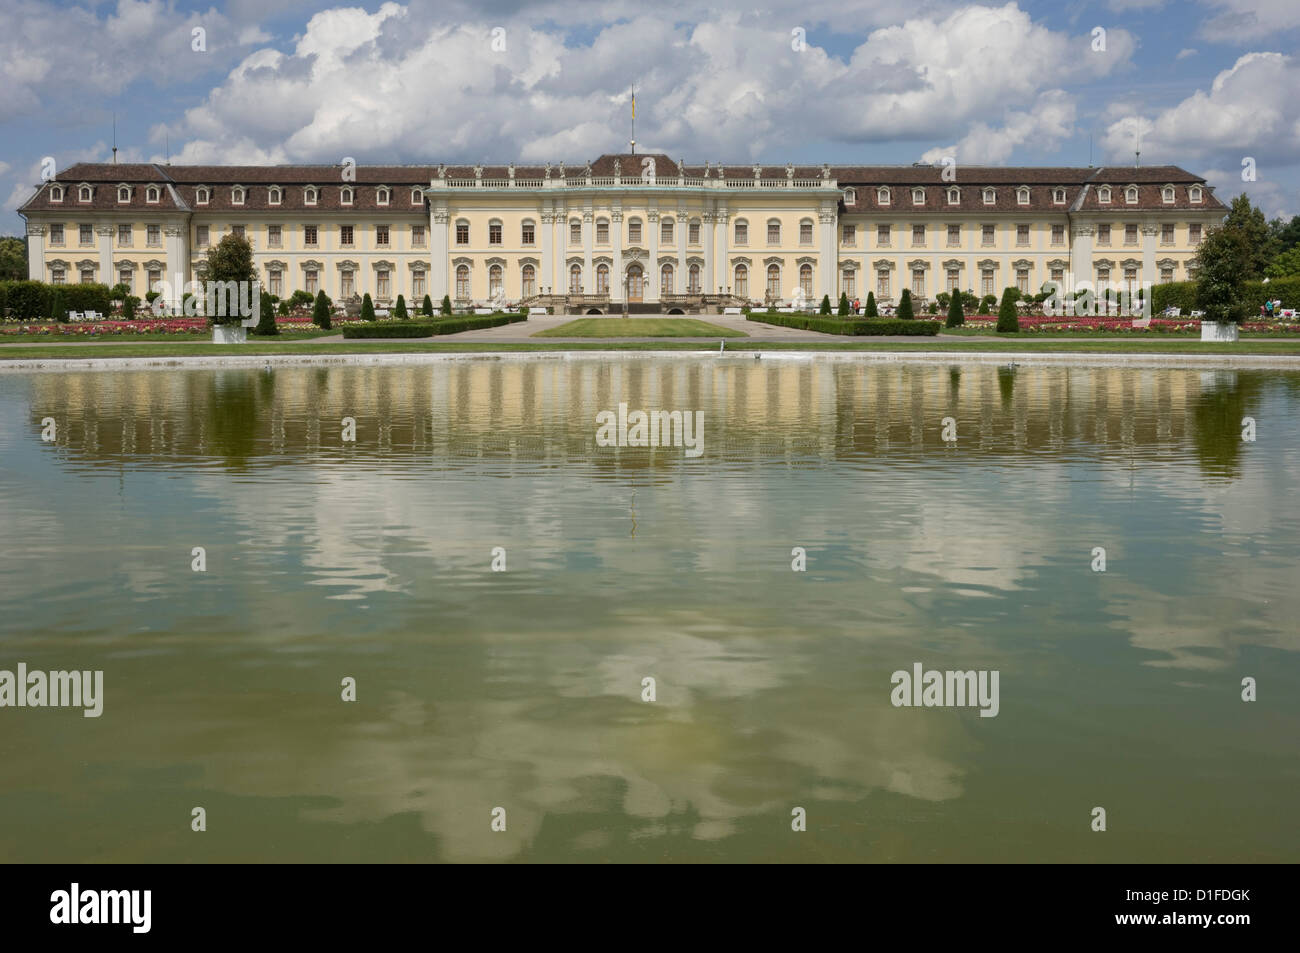 Le 18e siècle de style Baroque Residenzschloss, inspiré par le Palais de Versailles, Ludwigsburg, Baden Wurtemberg, Allemagne, Europe Banque D'Images